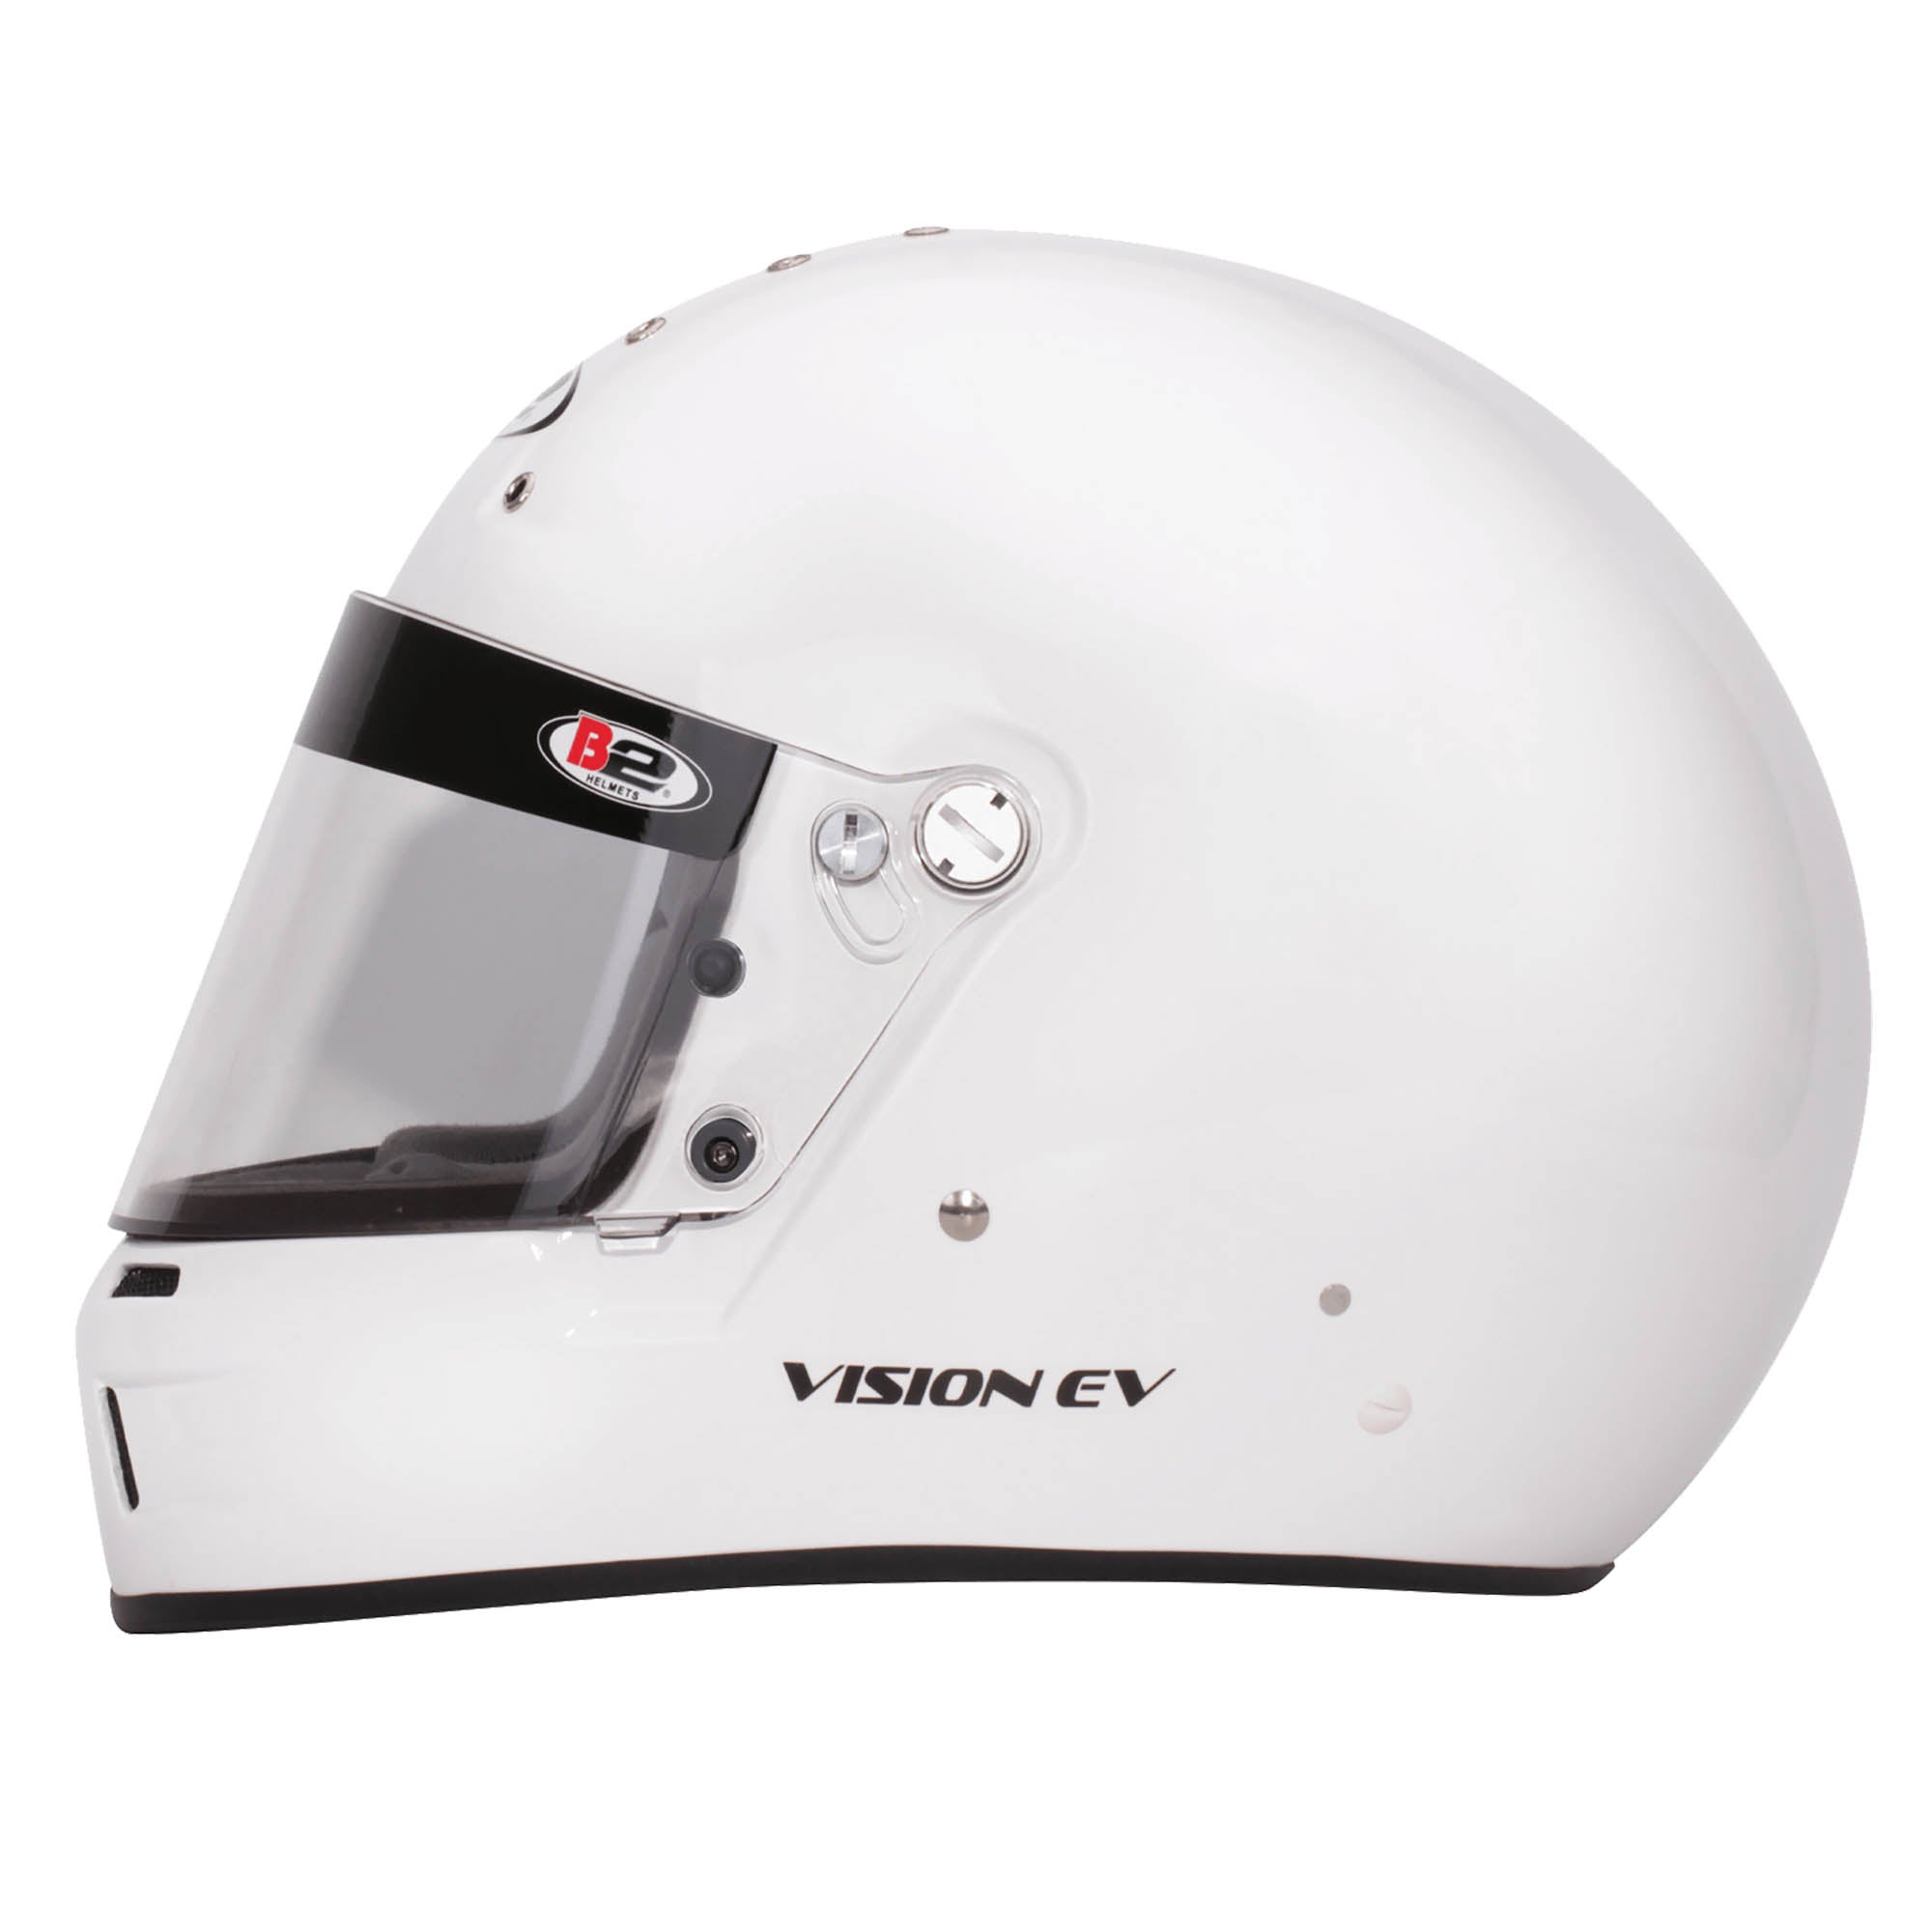 B2 Vision EV SA2020 Helmet